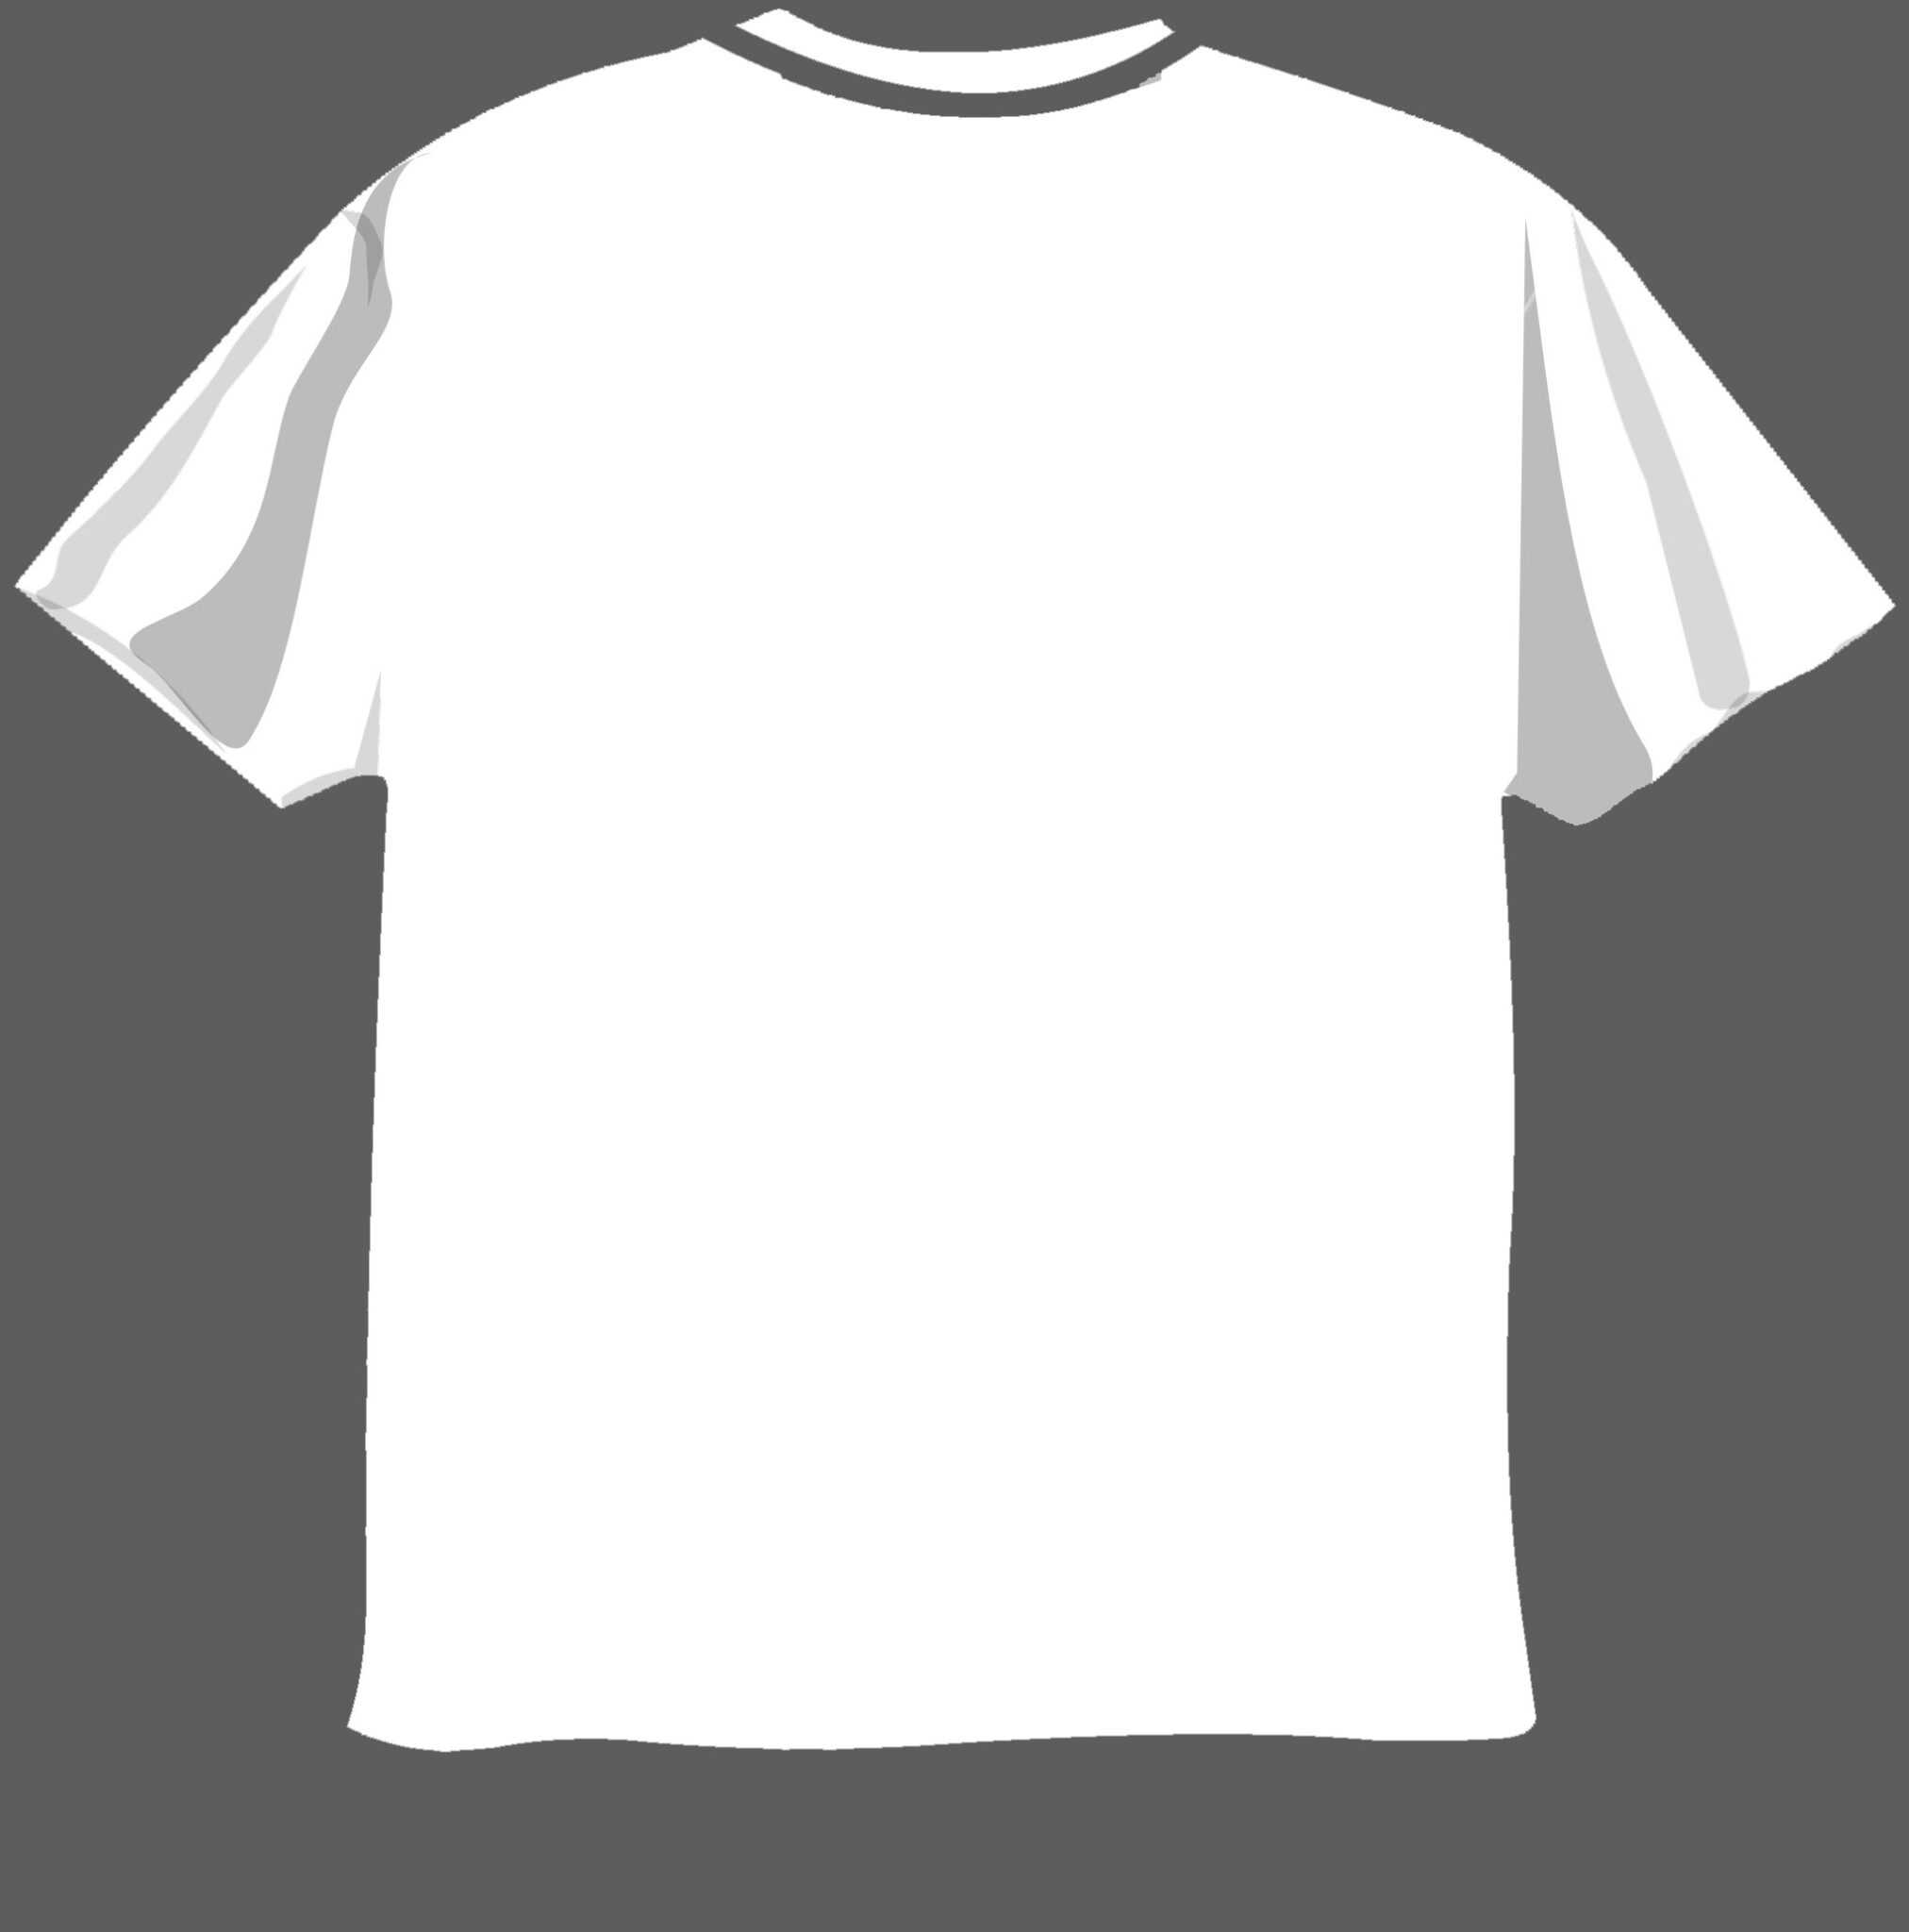 Blank T Shirt Design Template Psd